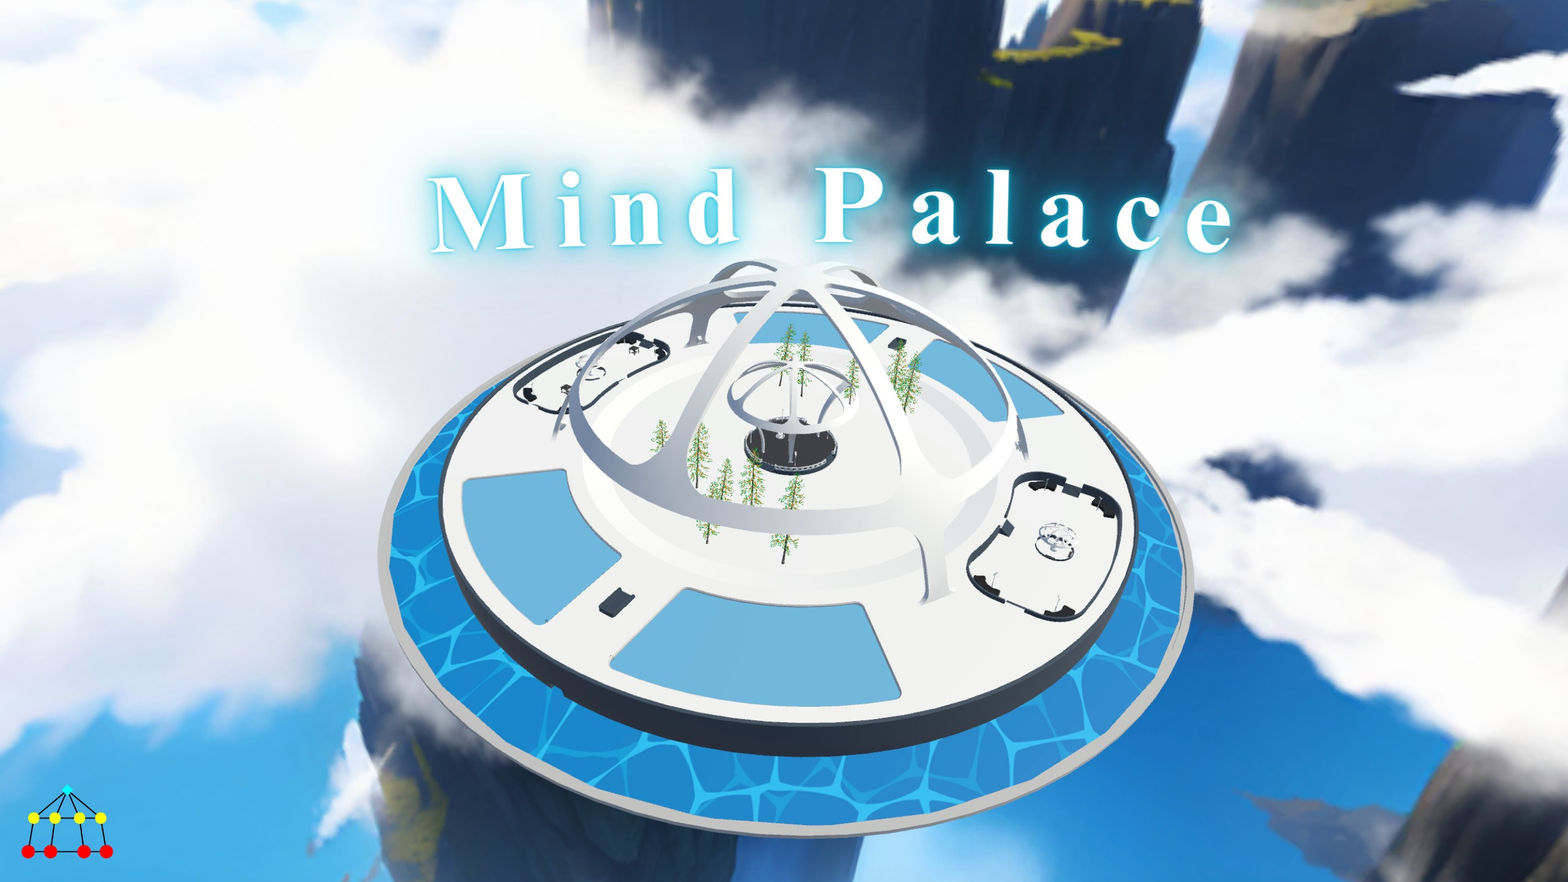 Mind Palace